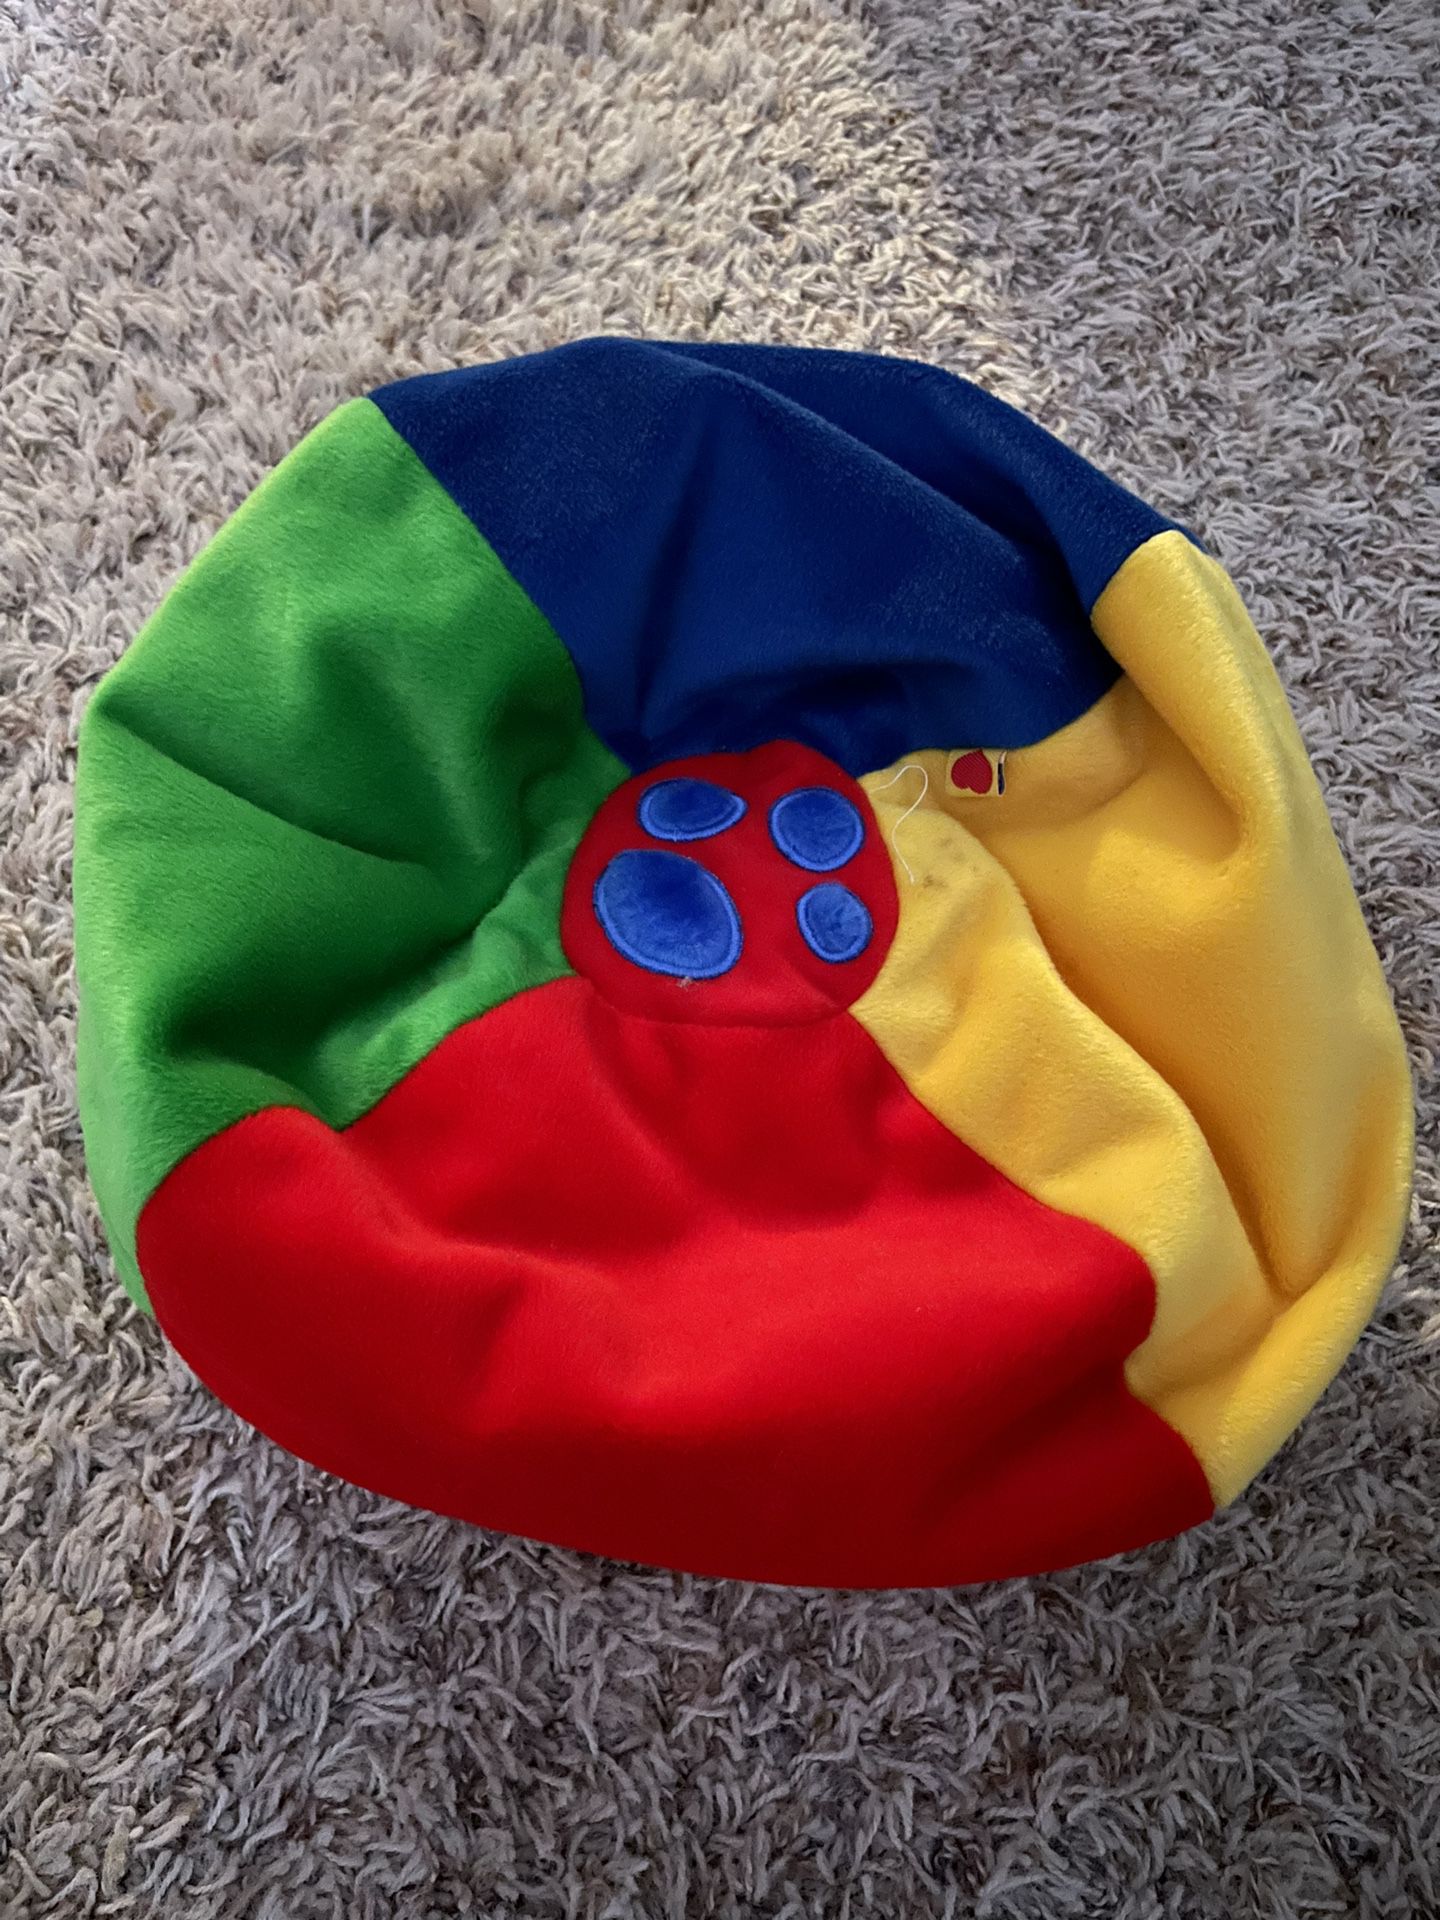 Build A Bear Accessories 2001 Red Blue Yellow Green Bean Bag Chair